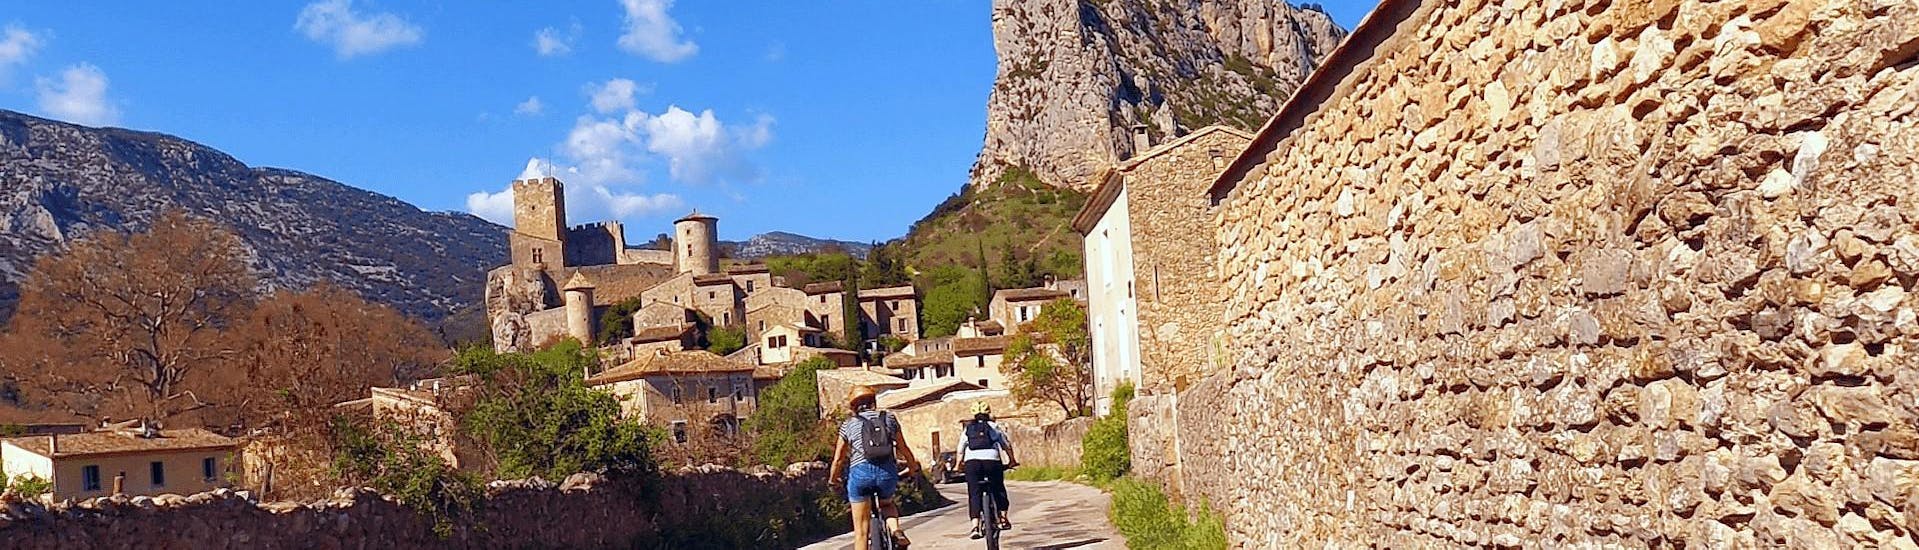 Fahrradverleih in Saint-Jean-de-Buèges - Gorges de l'Hérault.